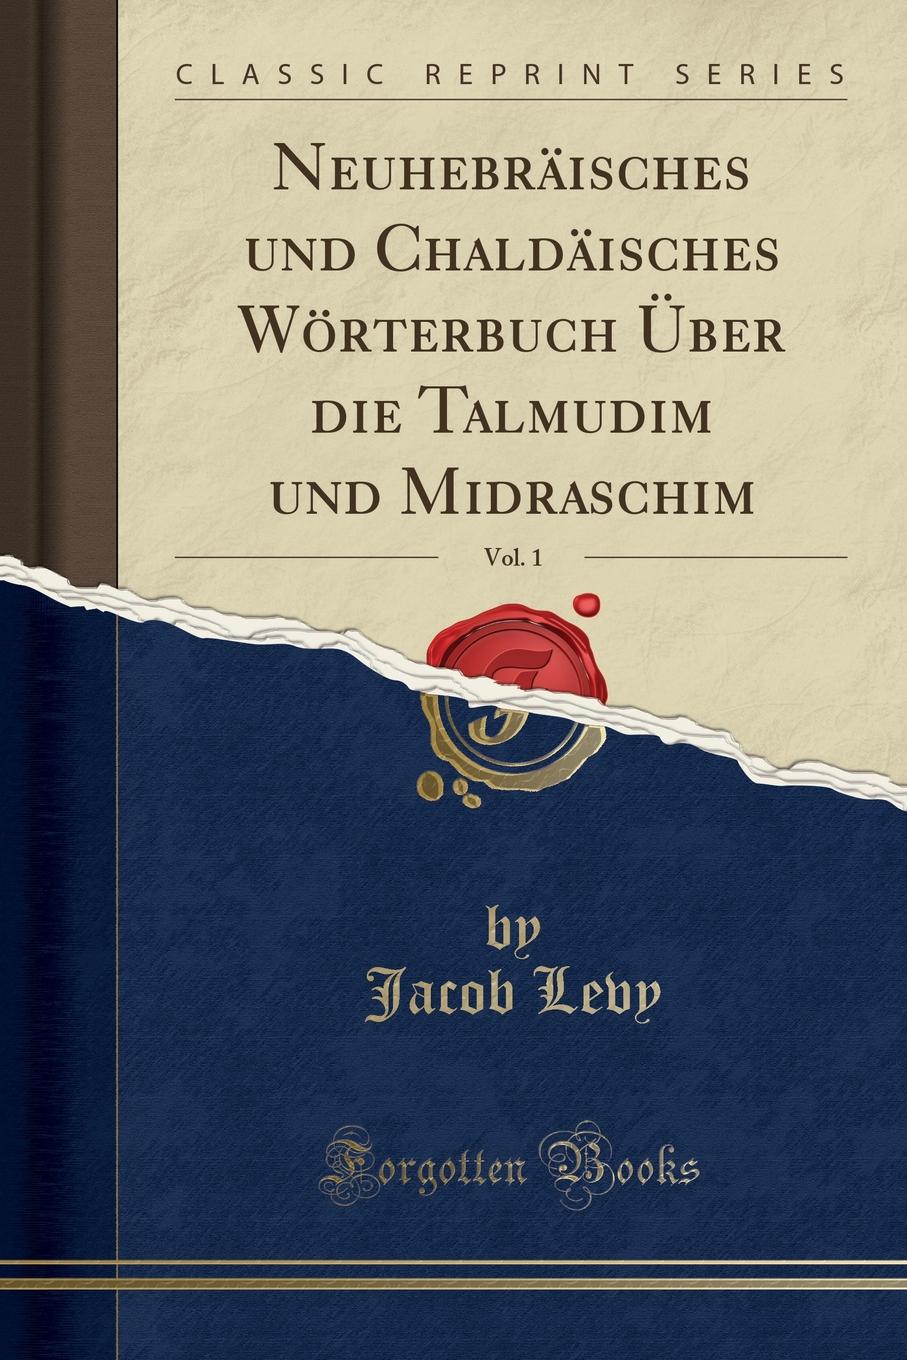 Neuhebraisches und Chaldaisches Worterbuch Uber die Talmudim und Midraschim, Vol. 1 (Classic Reprint)